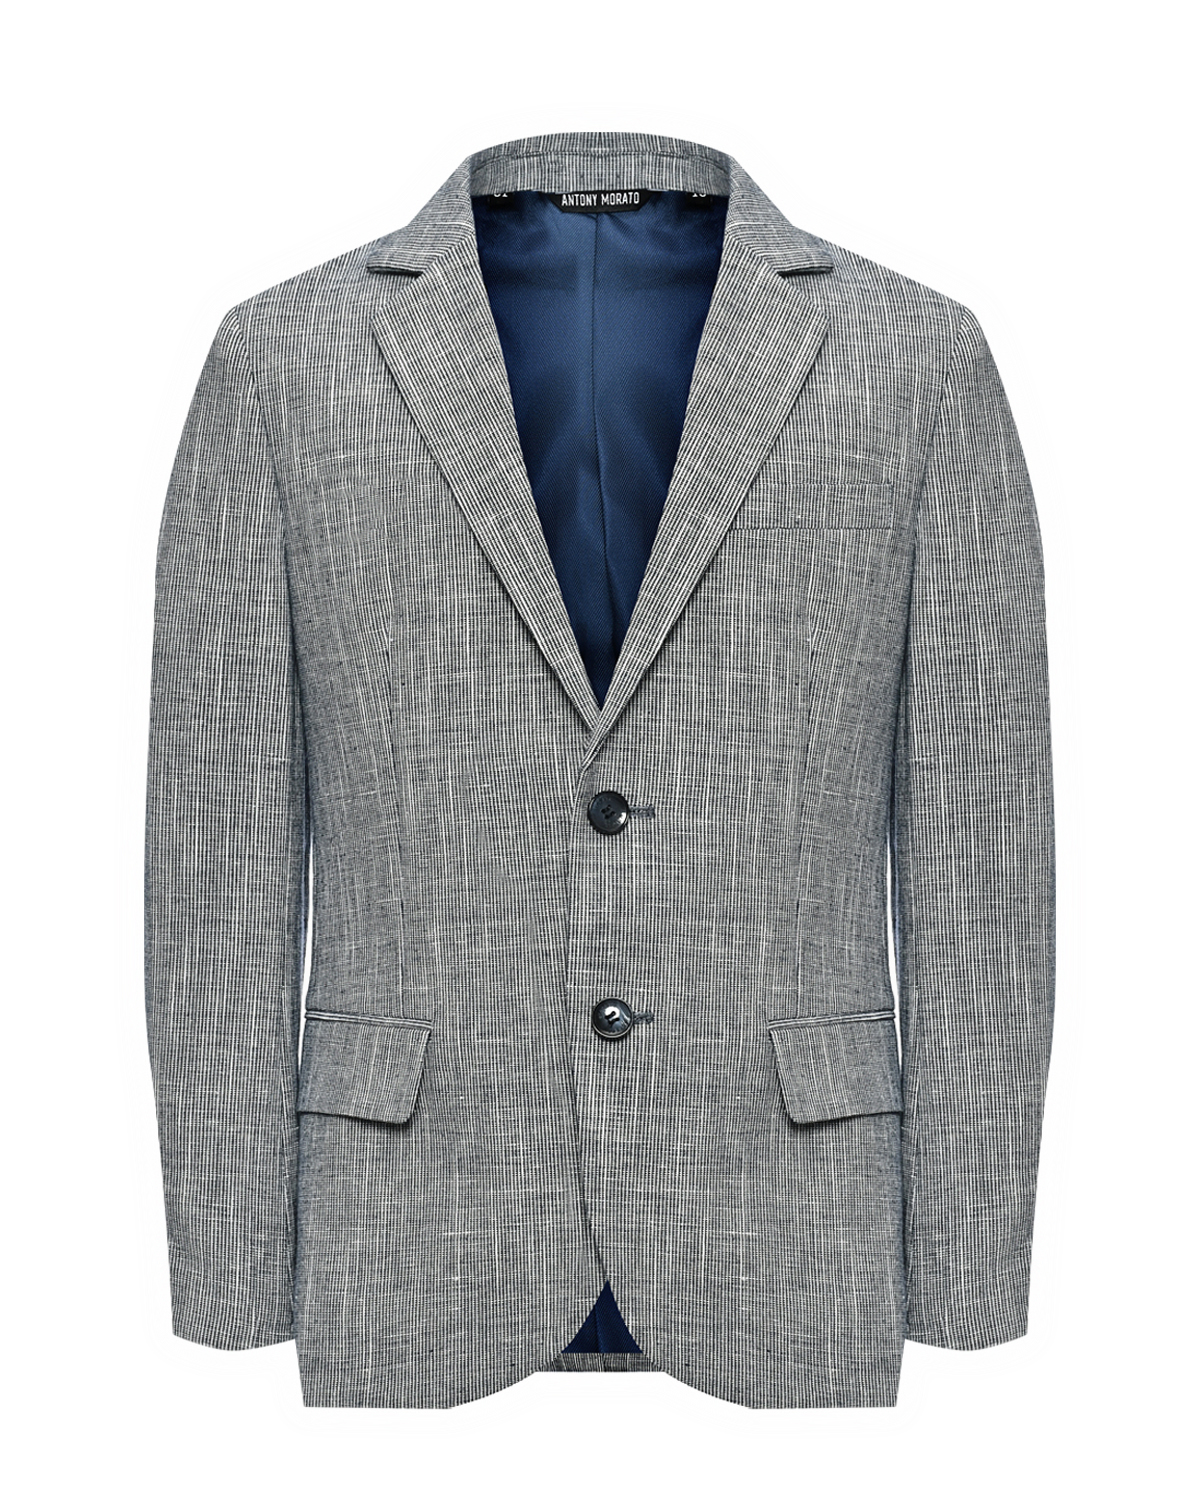 Пиджак однобортный серый, текстурная ткань Antony Morato однобортный пиджак antony morato детский